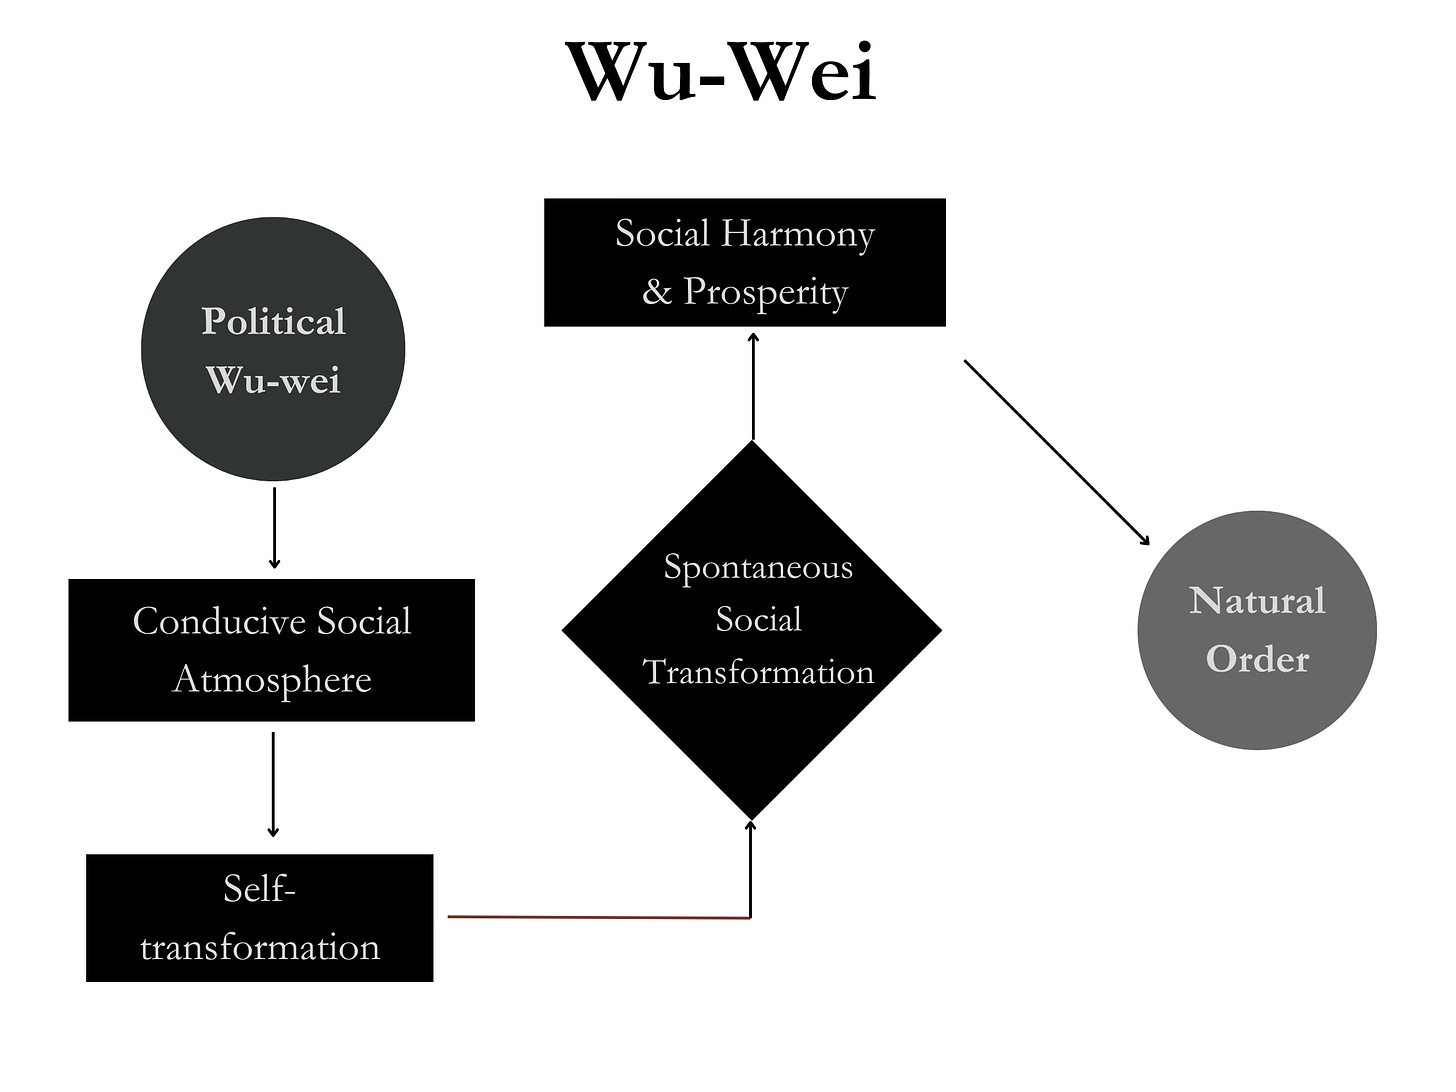 wu-wei in a visual